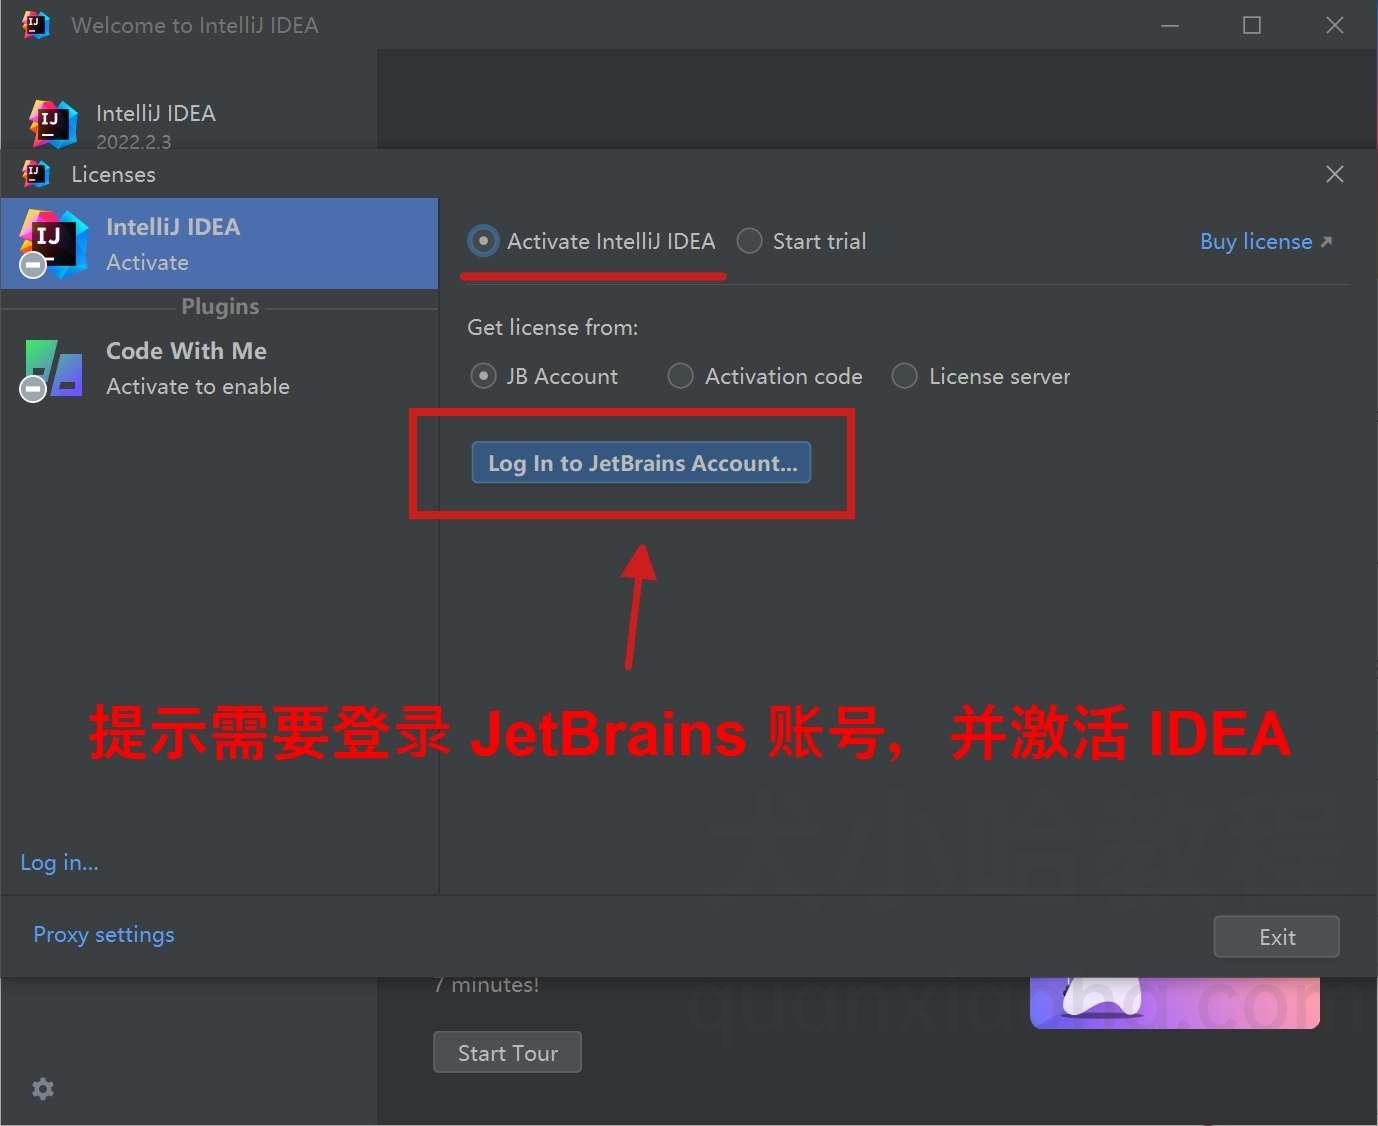 提示需要登录 JetBrains 账号并激活